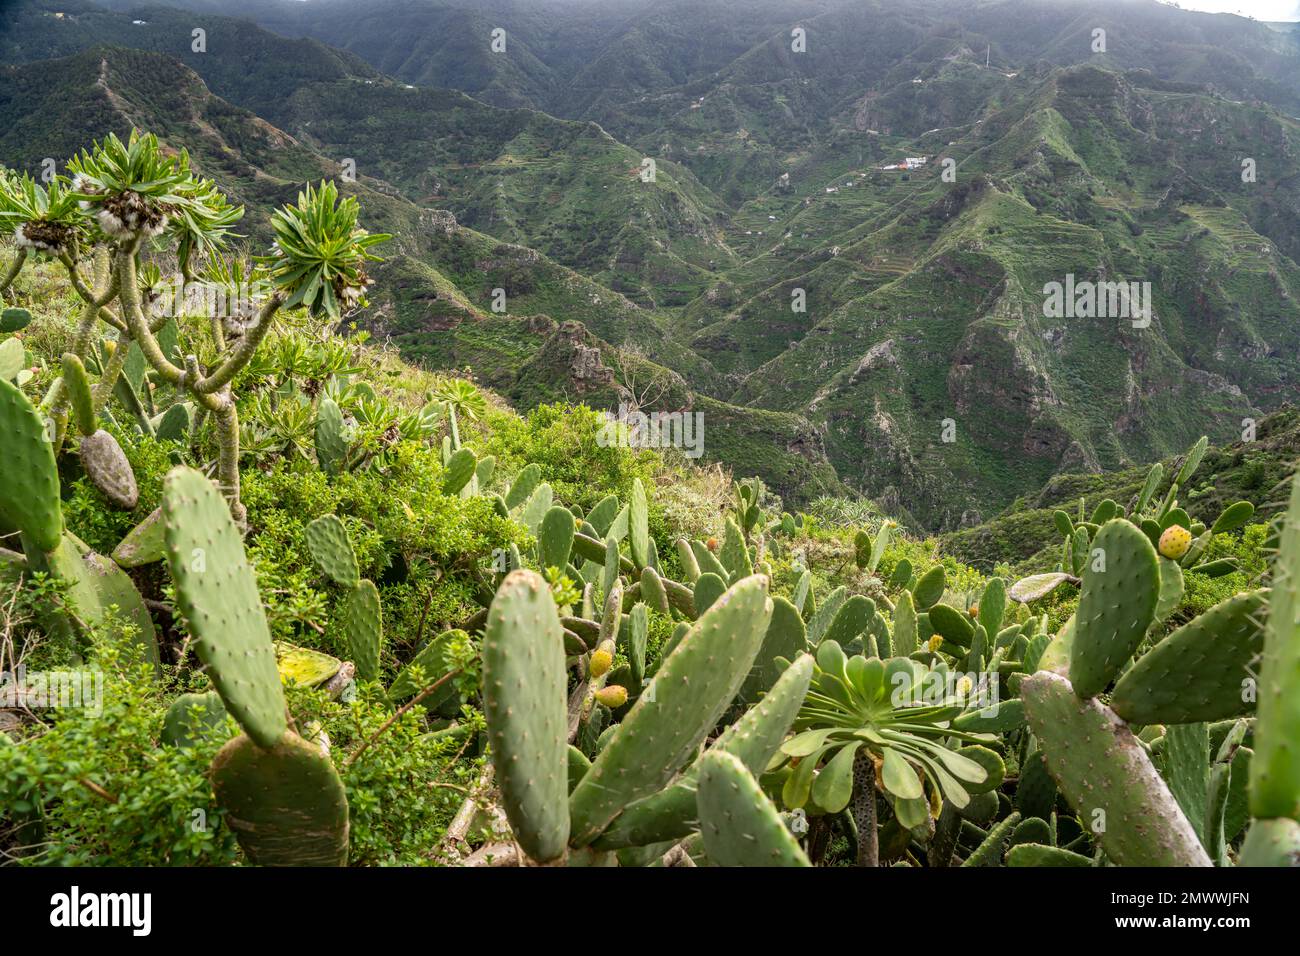 Landschaft am Wanderweg von Punta del Hidalgo nach Chinamada,  Teneriffa, Kanarische Inseln, Spanien |  Landscape around the hiking trail from Punta d Stock Photo